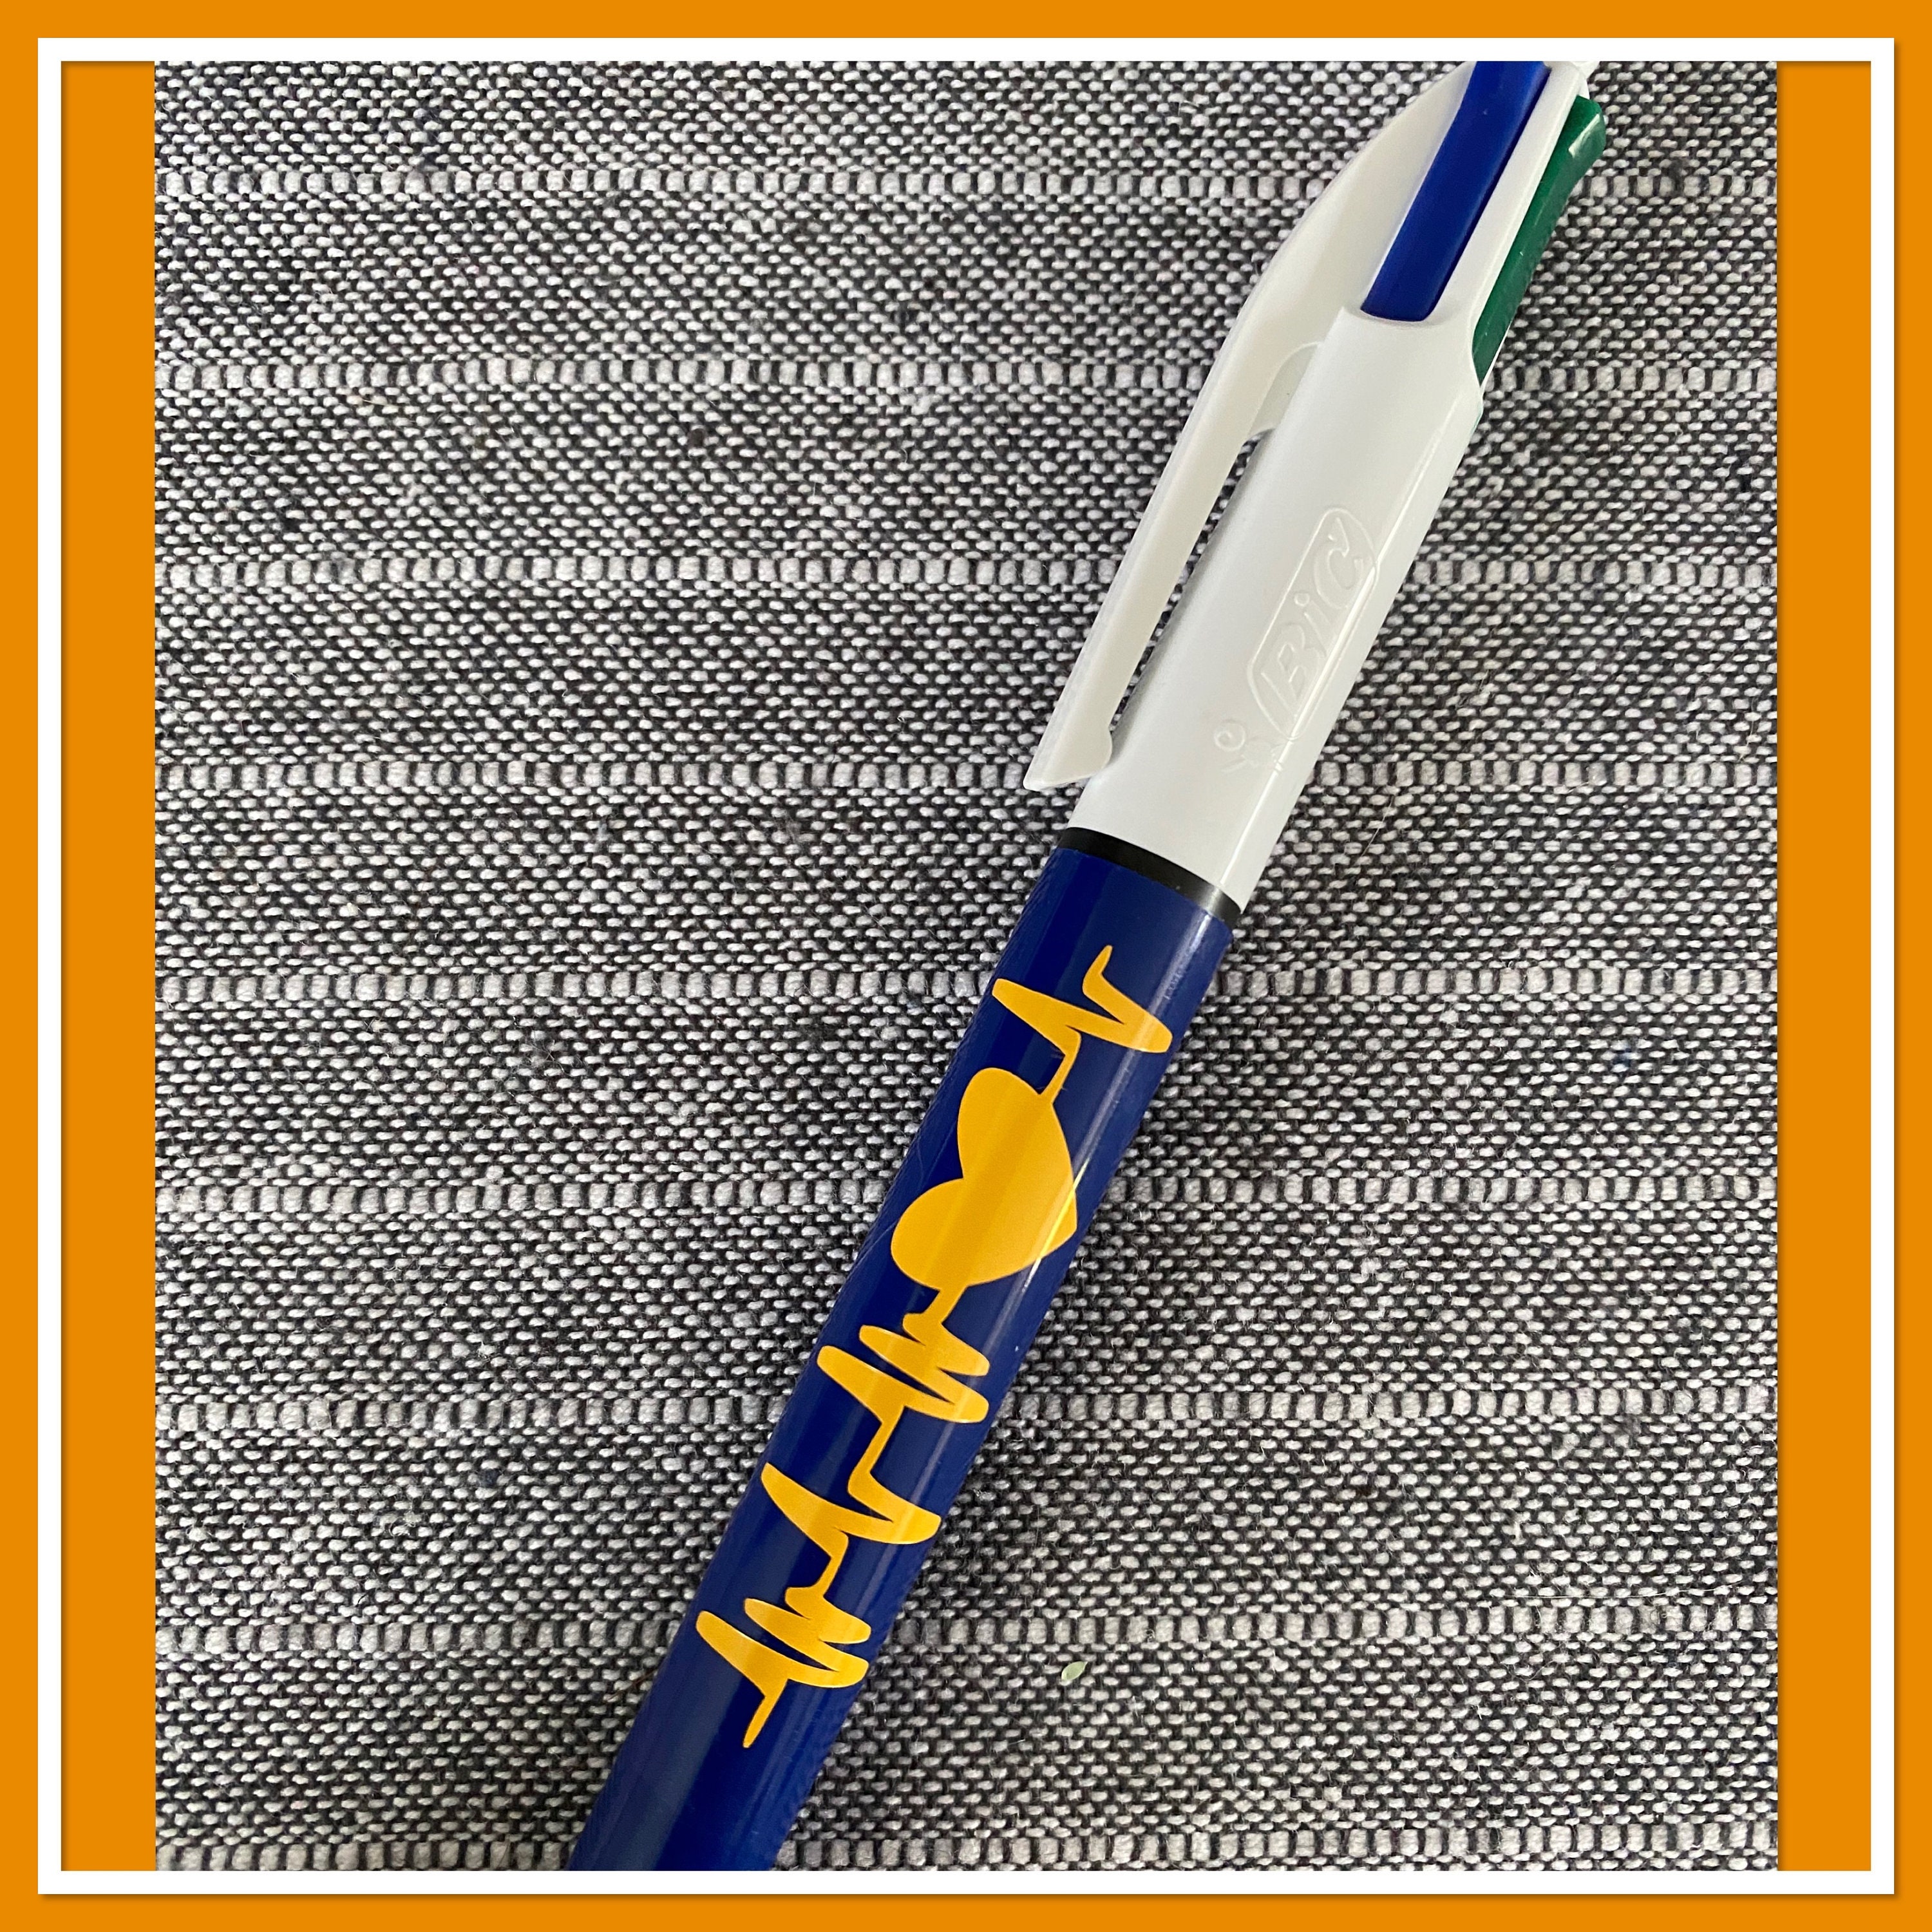 BIC® 4-Color™ Pen